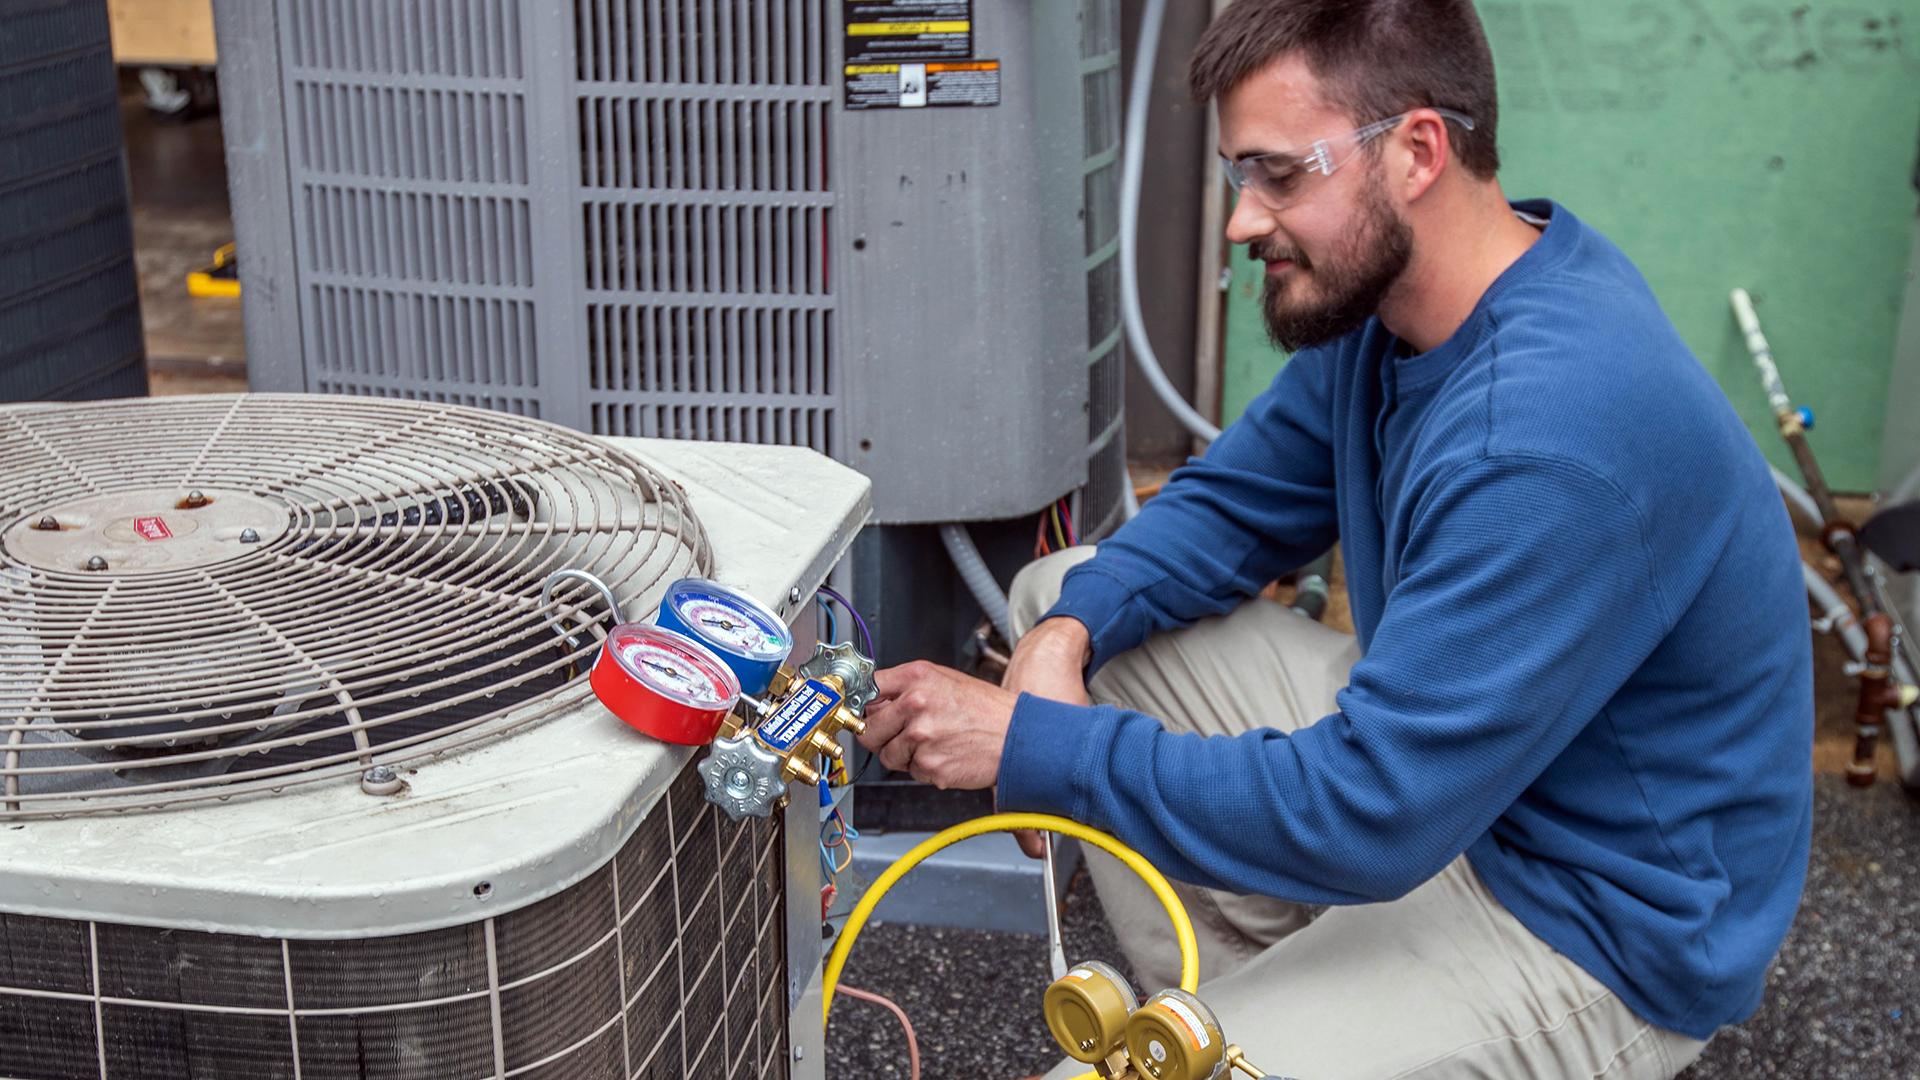 暖通空调维修和维护是几十个推进项目之一